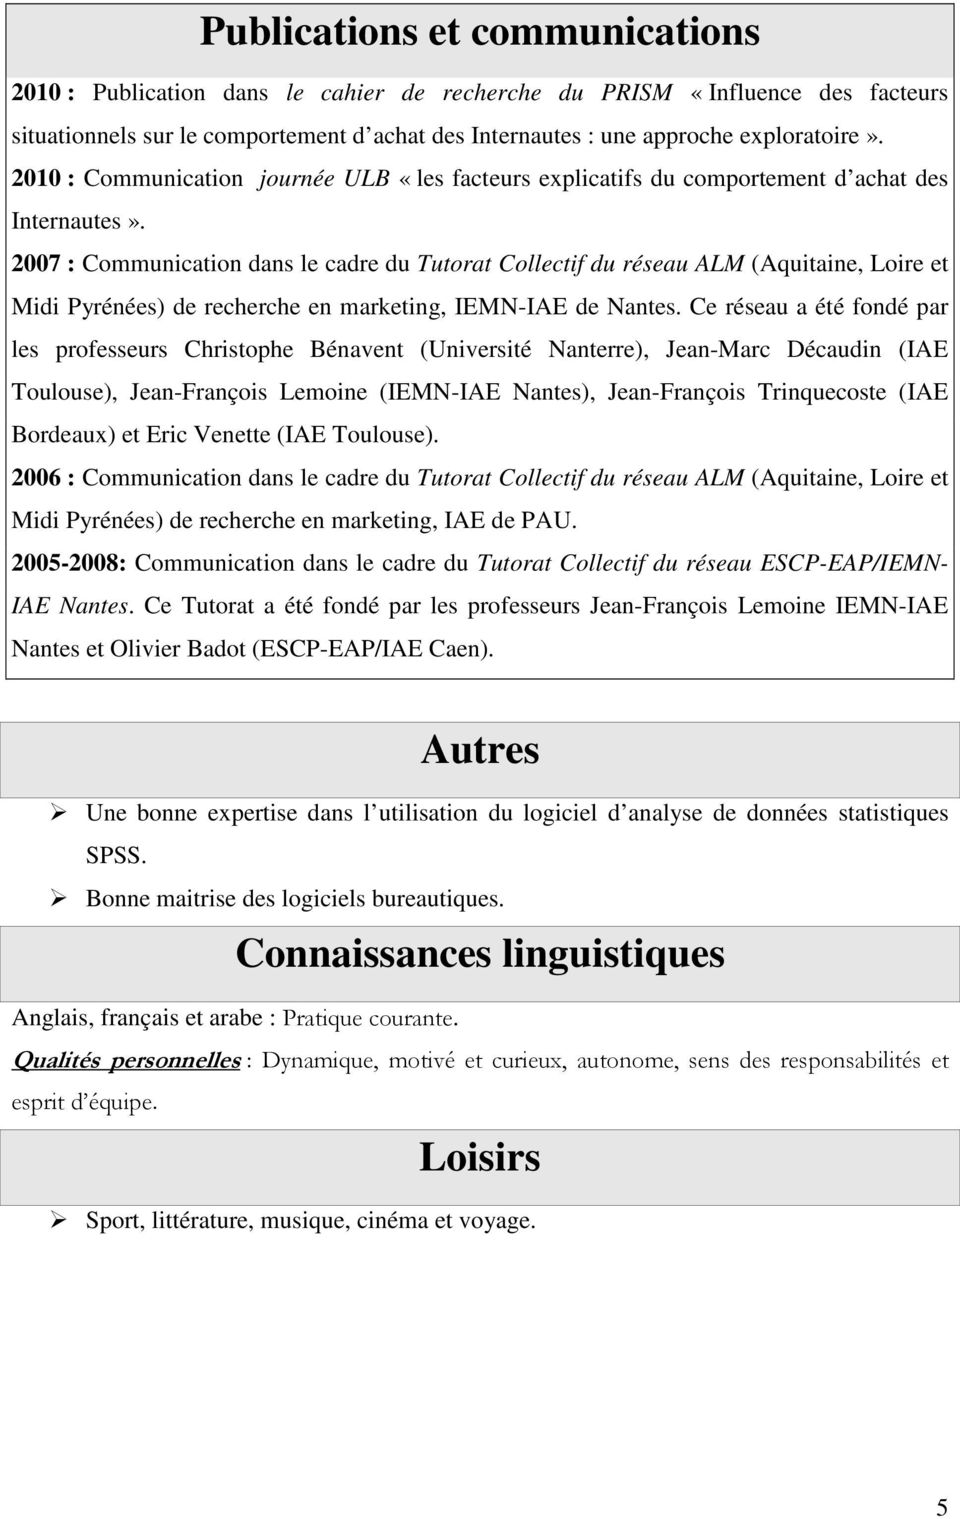 2007 : Communication dans le cadre du Tutorat Collectif du réseau ALM (Aquitaine, Loire et Midi Pyrénées) de recherche en marketing, IEMN-IAE de Nantes.